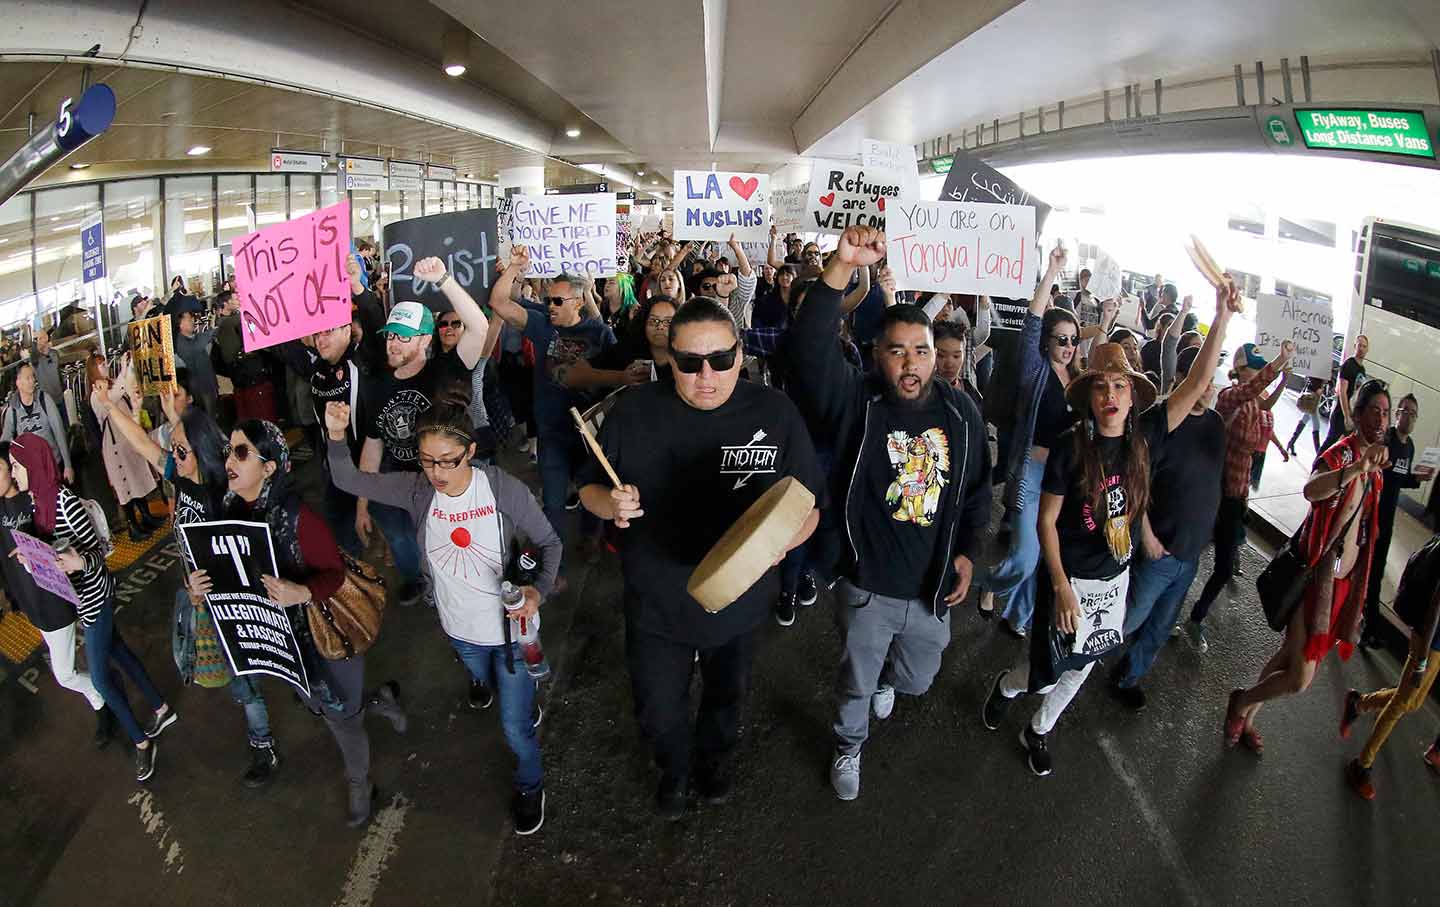 LAX Trump protesters